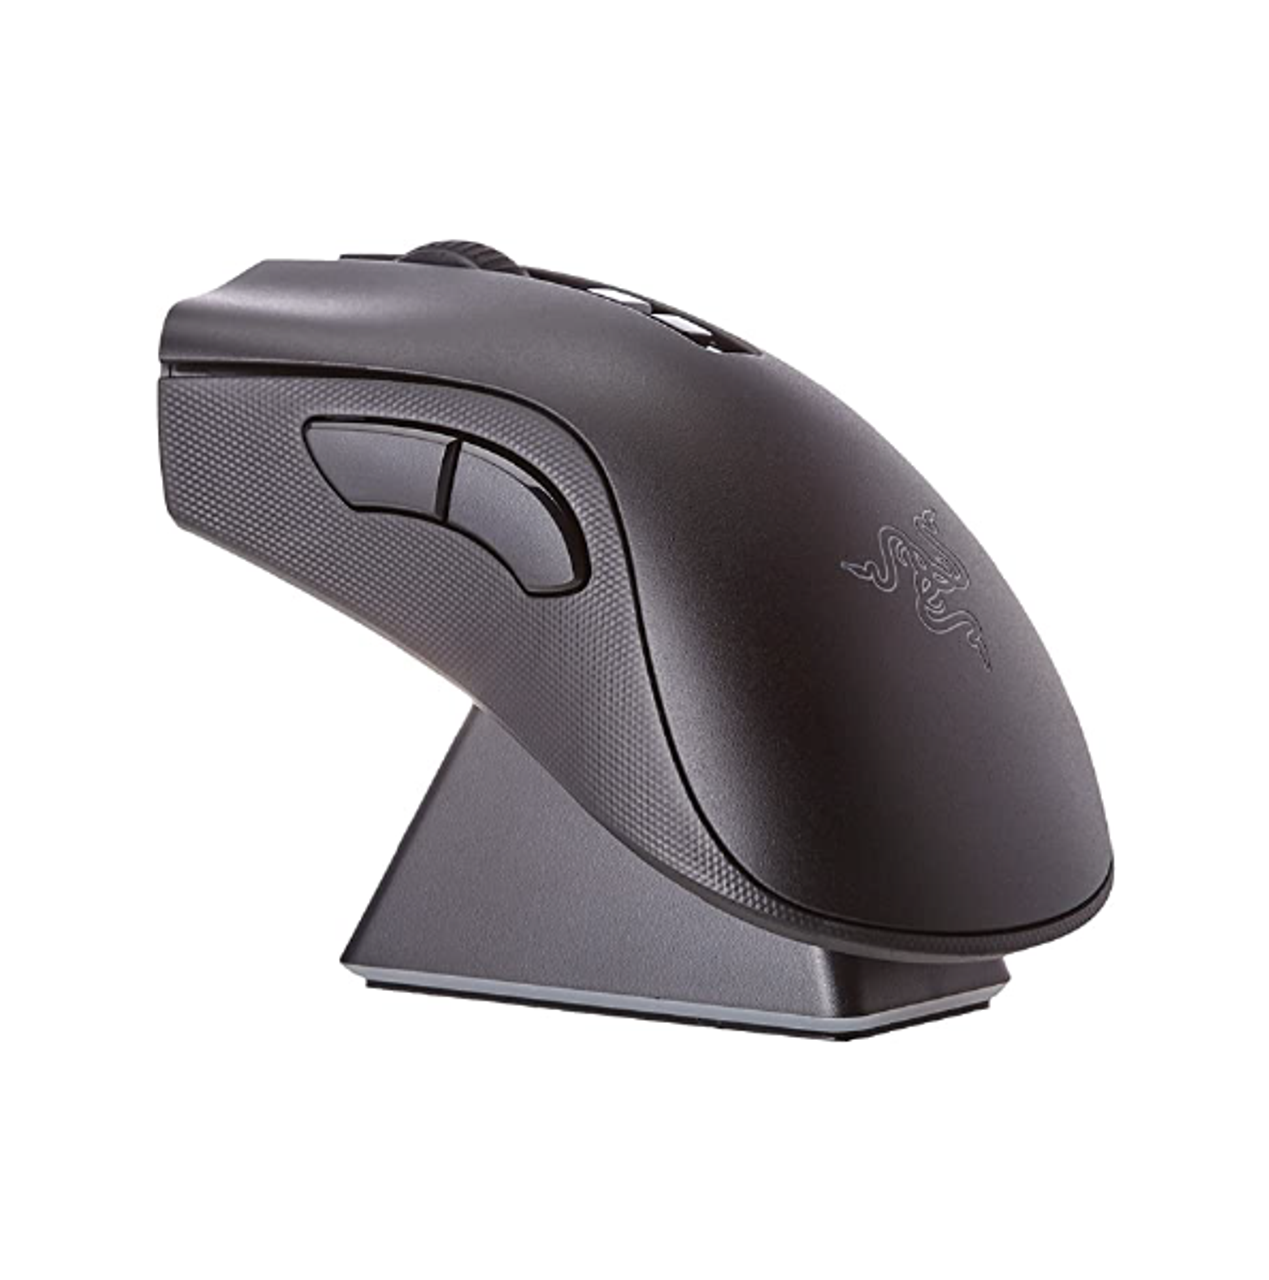 Razer DeathAdder Pro V2 Wireless Gaming Mouse Black